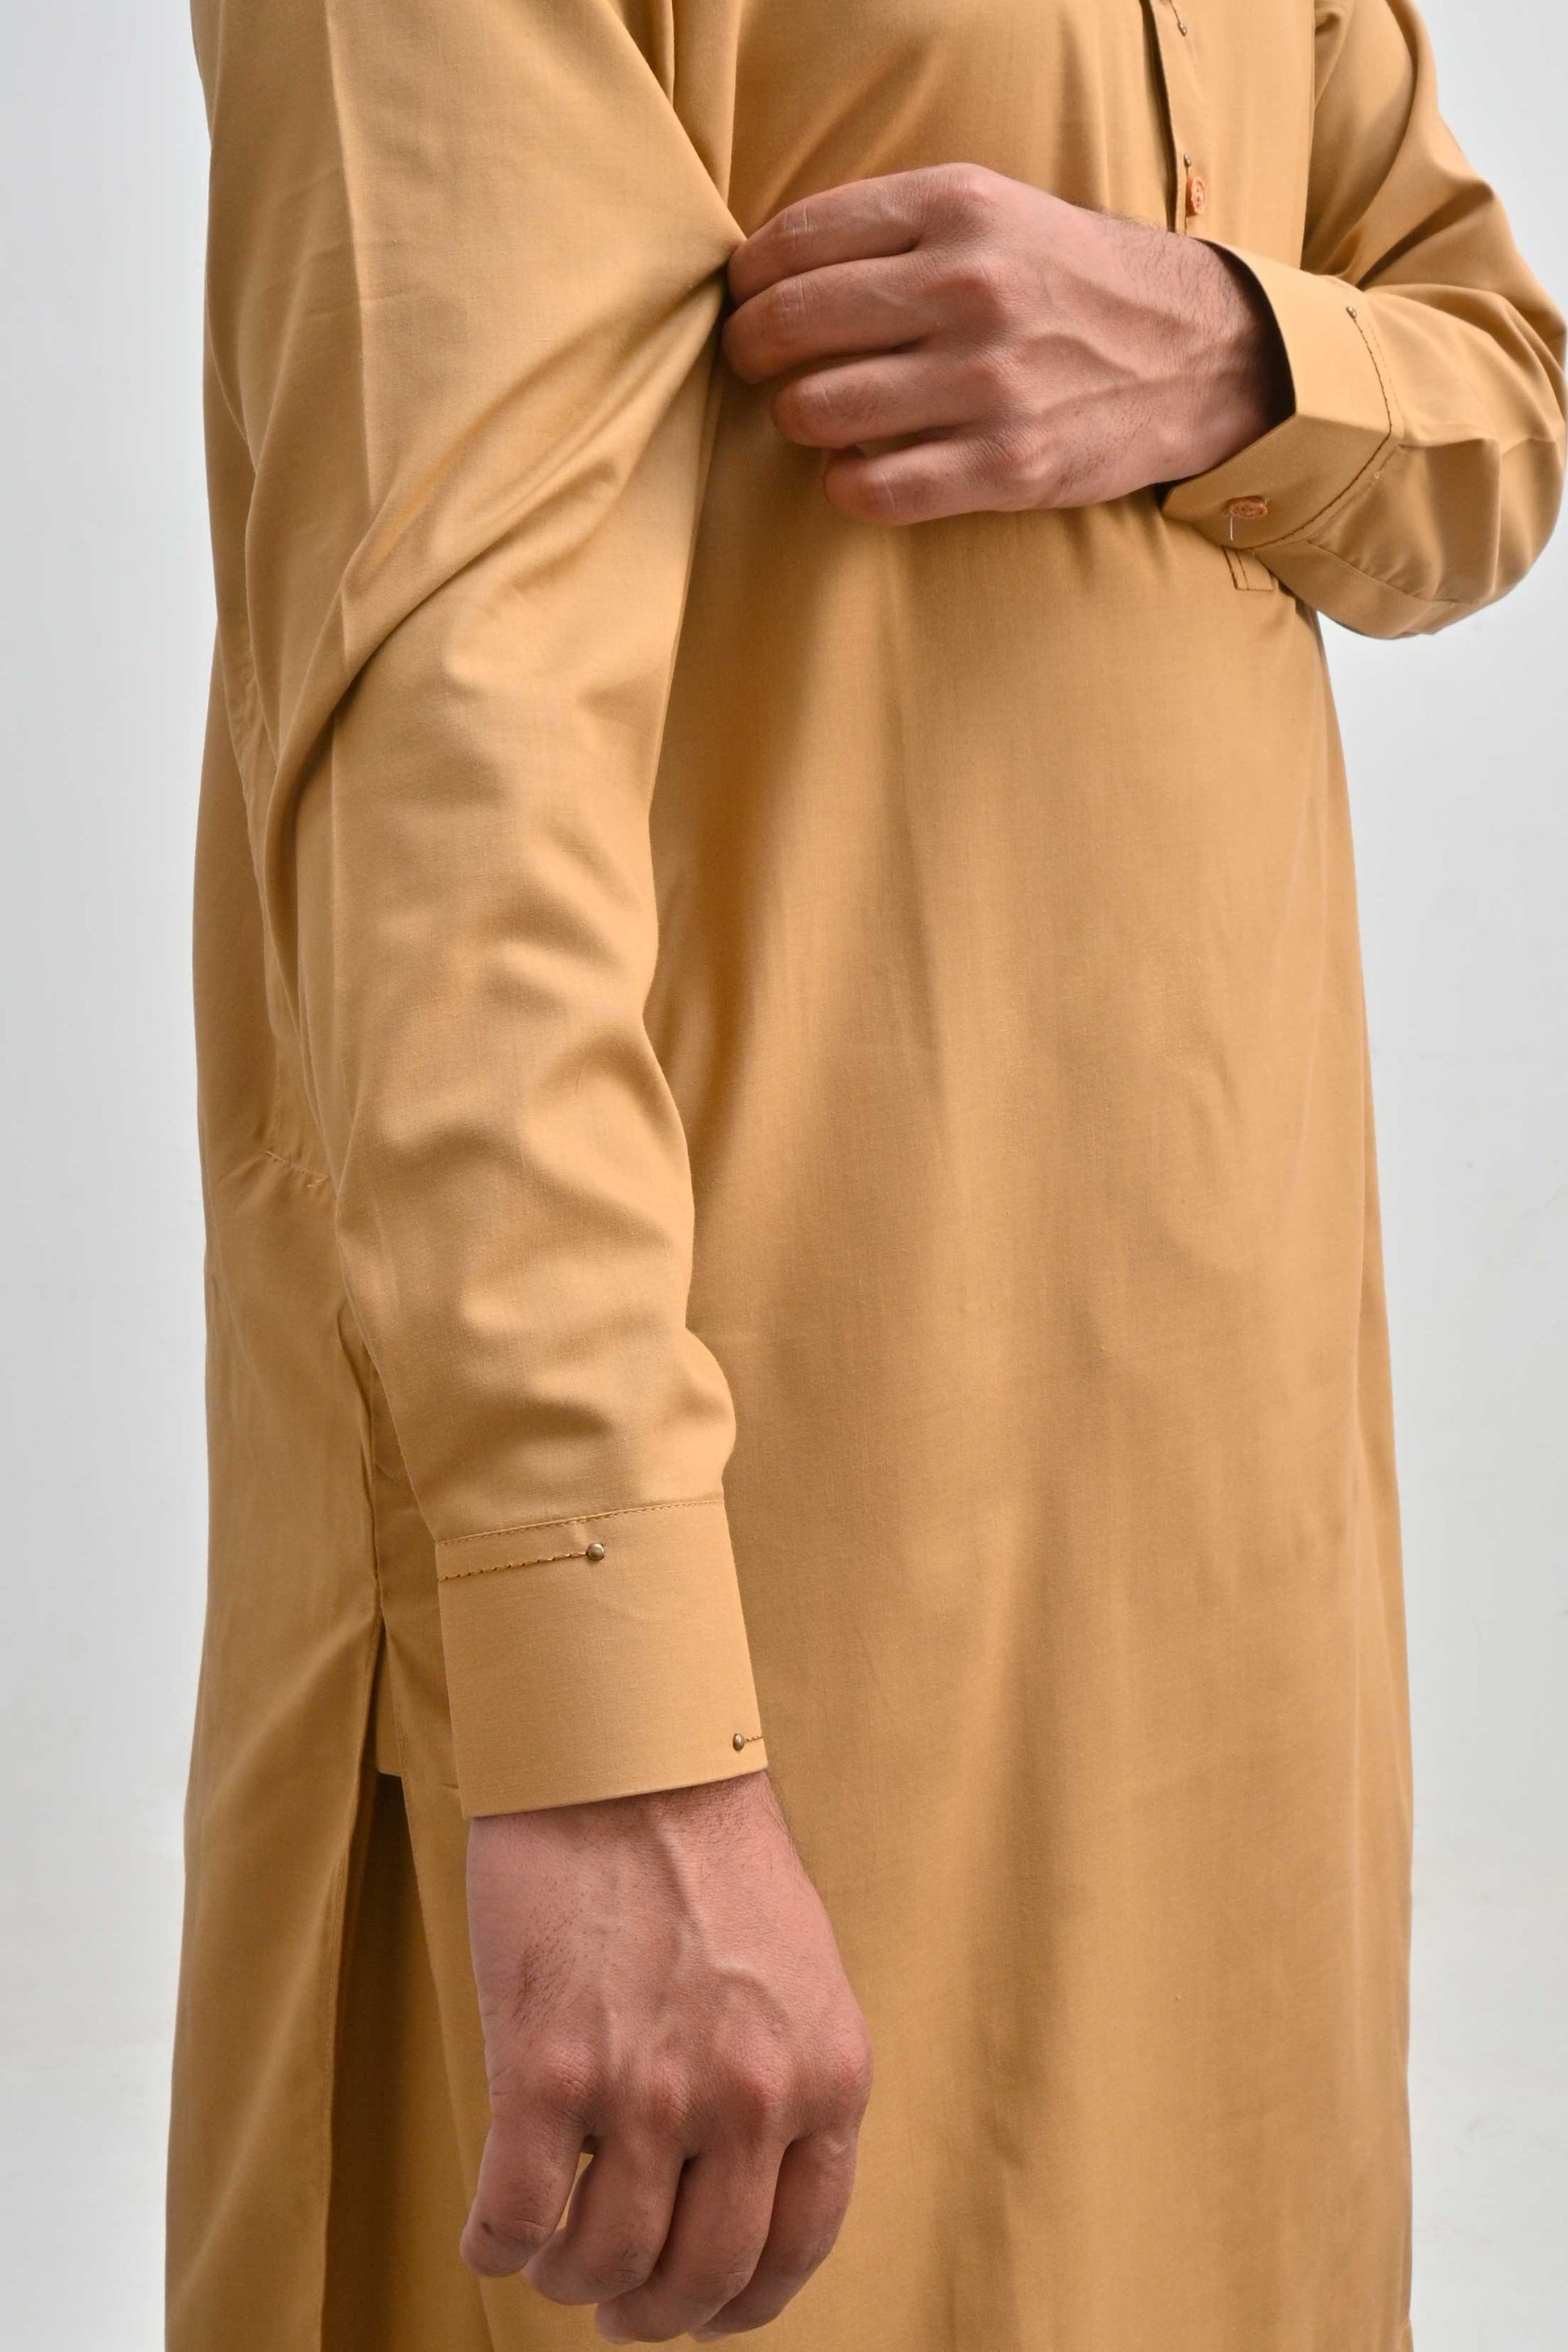 Hud Hud Men's Mandarin Collar Stitched Suit Shalwar Kameez Men's Suit MHJ 